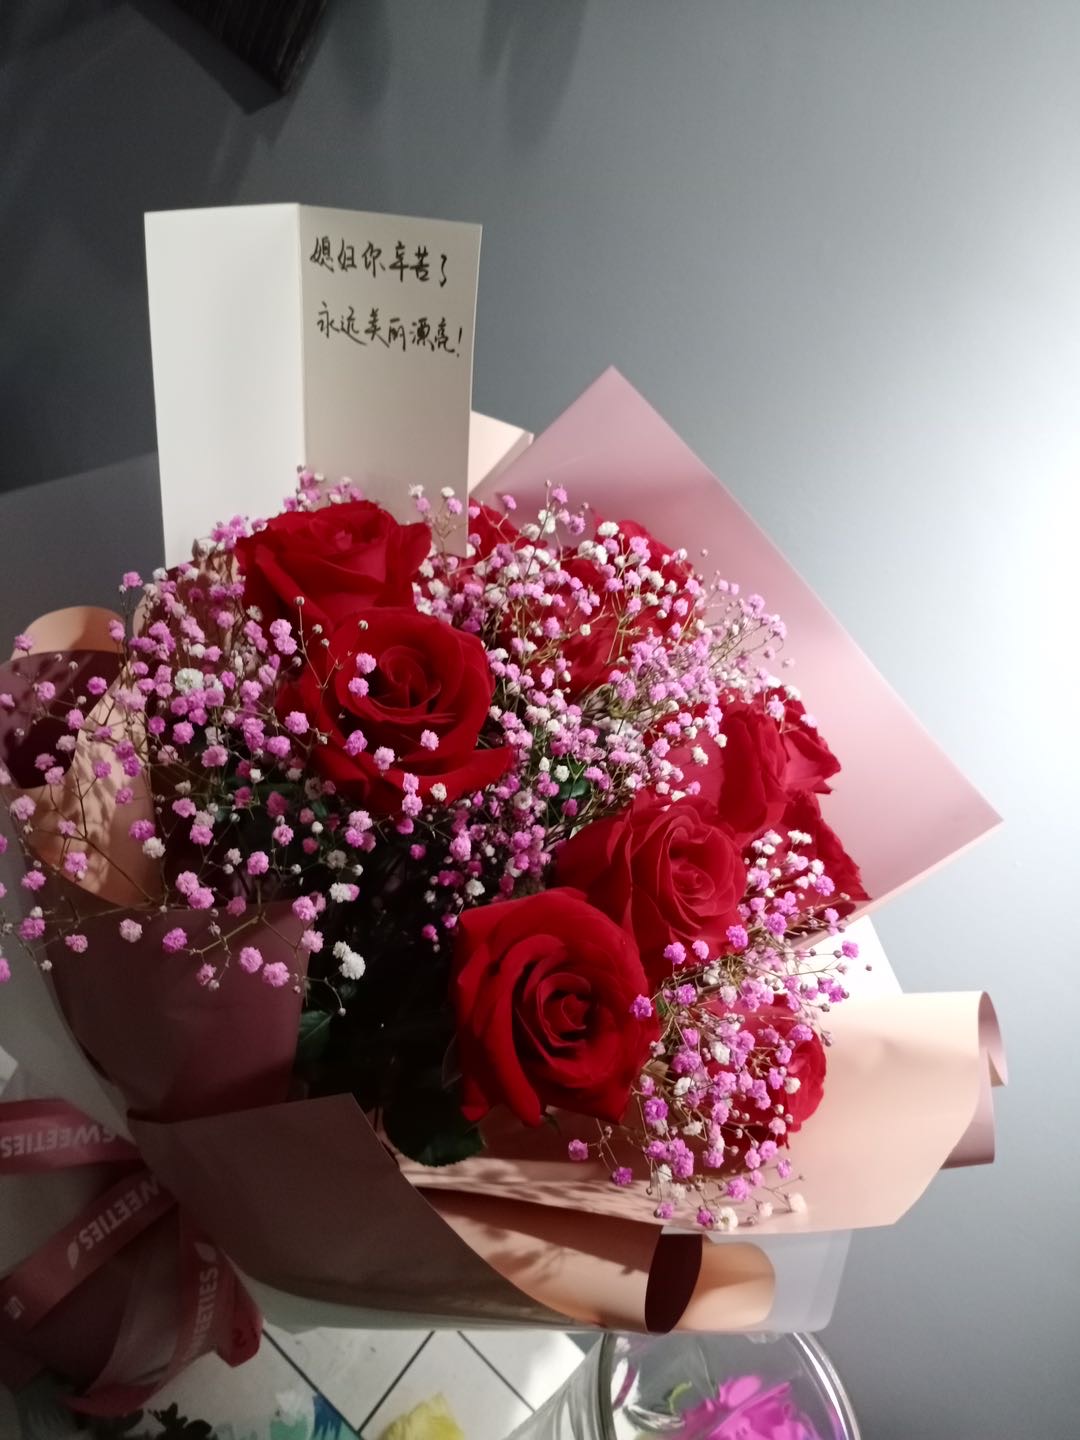 我们为您提供情人节红玫瑰的优质评价,包括情人节红玫瑰商品评价,晒单